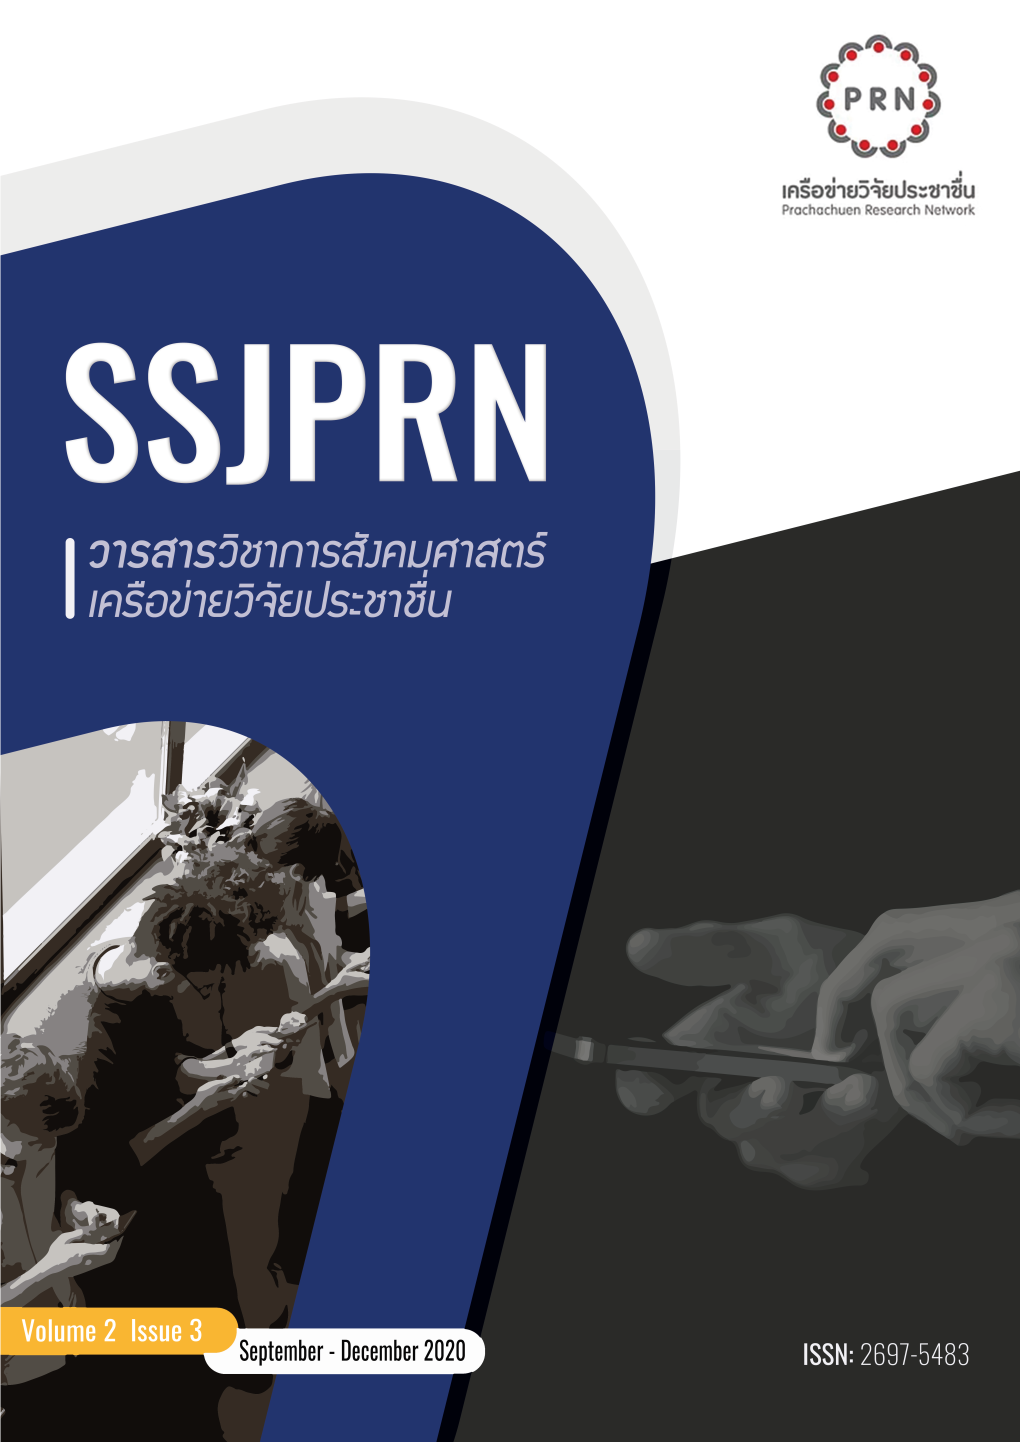 วารสารวิชาการสังคมศาสตร์เครือข่ายวิจัยประชาชื่น Social Science Journal of Prachachuen Research Network: SSJPRN